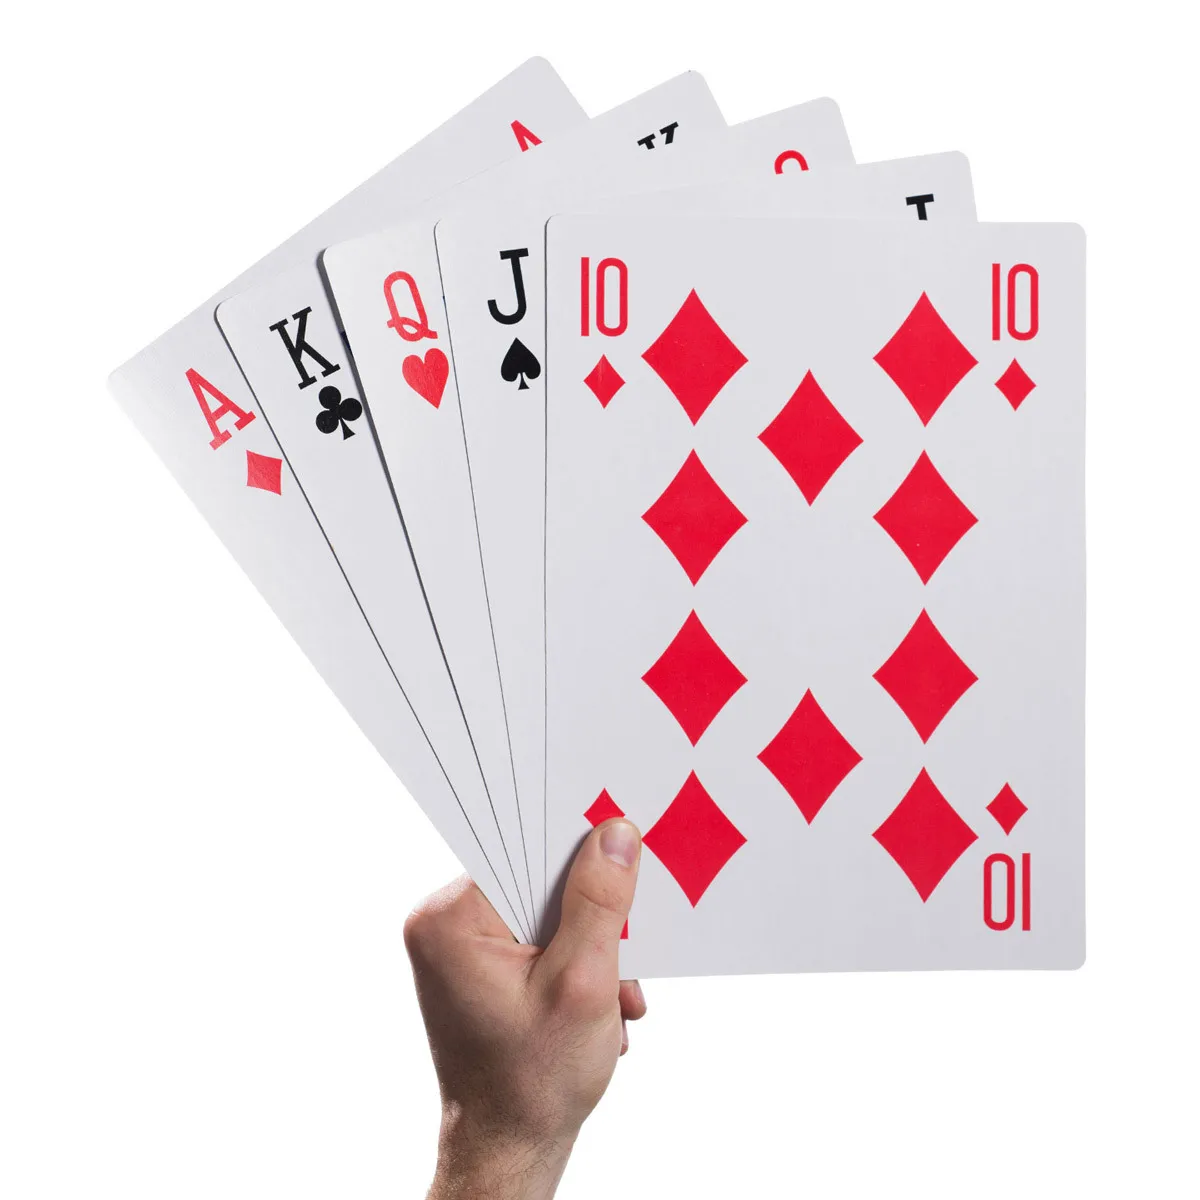 3 Størrelsen 2/4/9 Gange Super Stor Kæmpe Jumbo Spillekort Fuld Dæk Enorme Standard Udskriv Nyhed Poker Index Spillekort Sjovt Spil